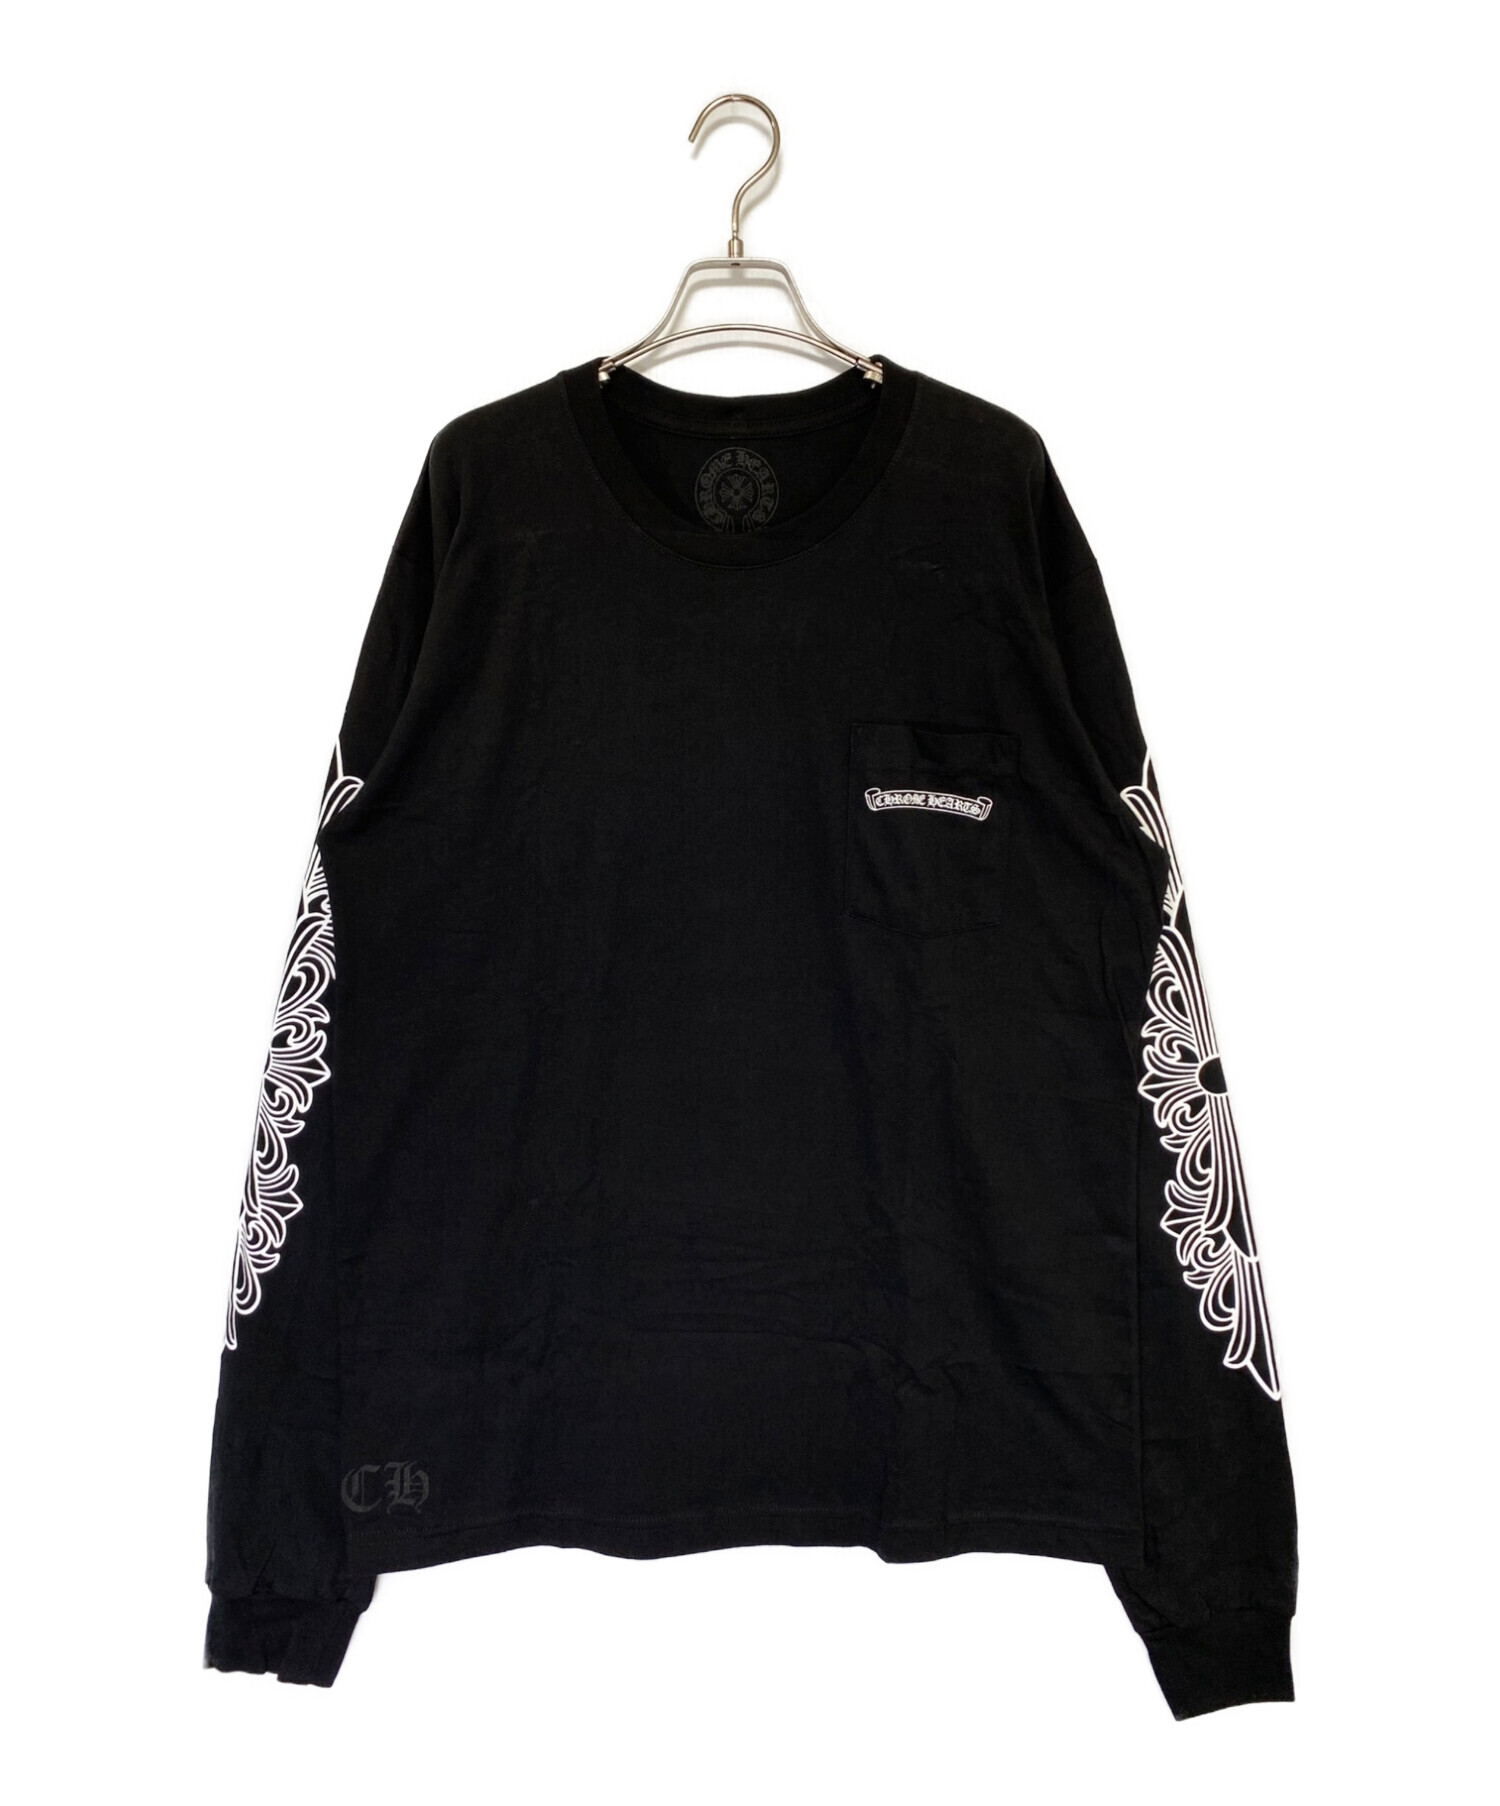 商品の状態クロムハーツ ロンT 長袖シャツ 未使用品 XL 黒×白 - T 